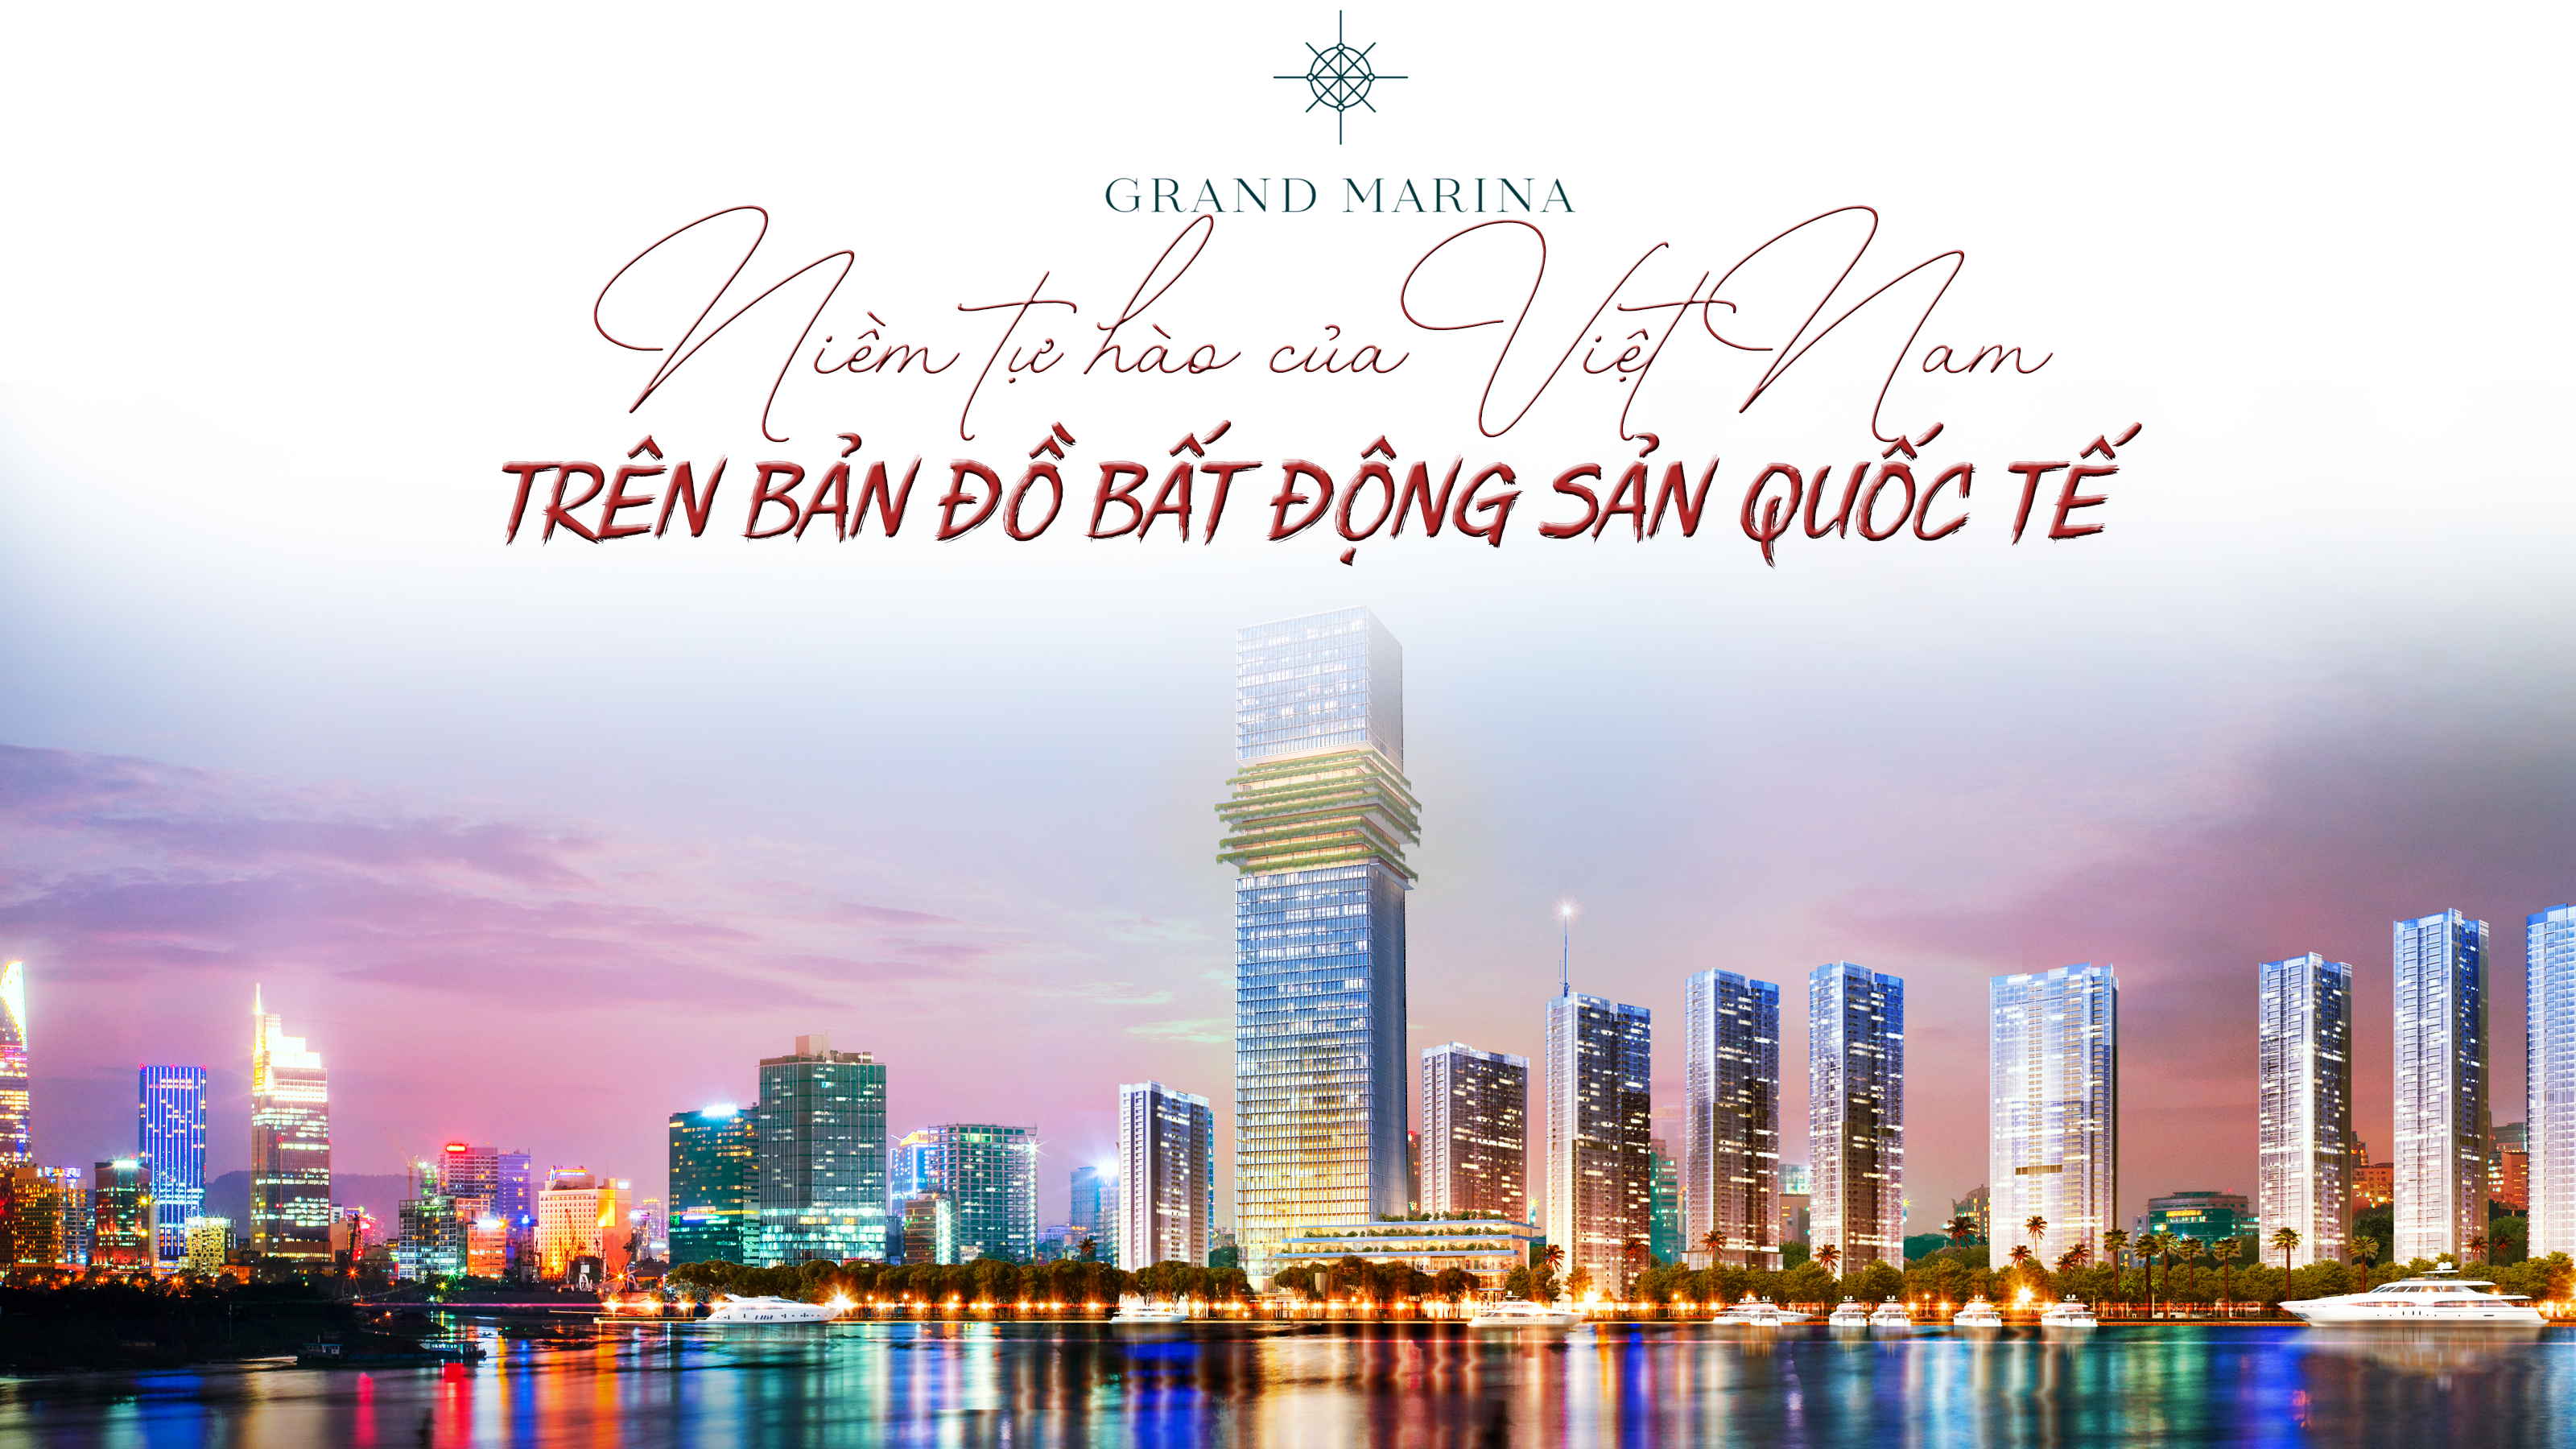 Grand Marina, Saigon – niềm tự hào của Việt Nam trên bản đồ bất động sản quốc tế